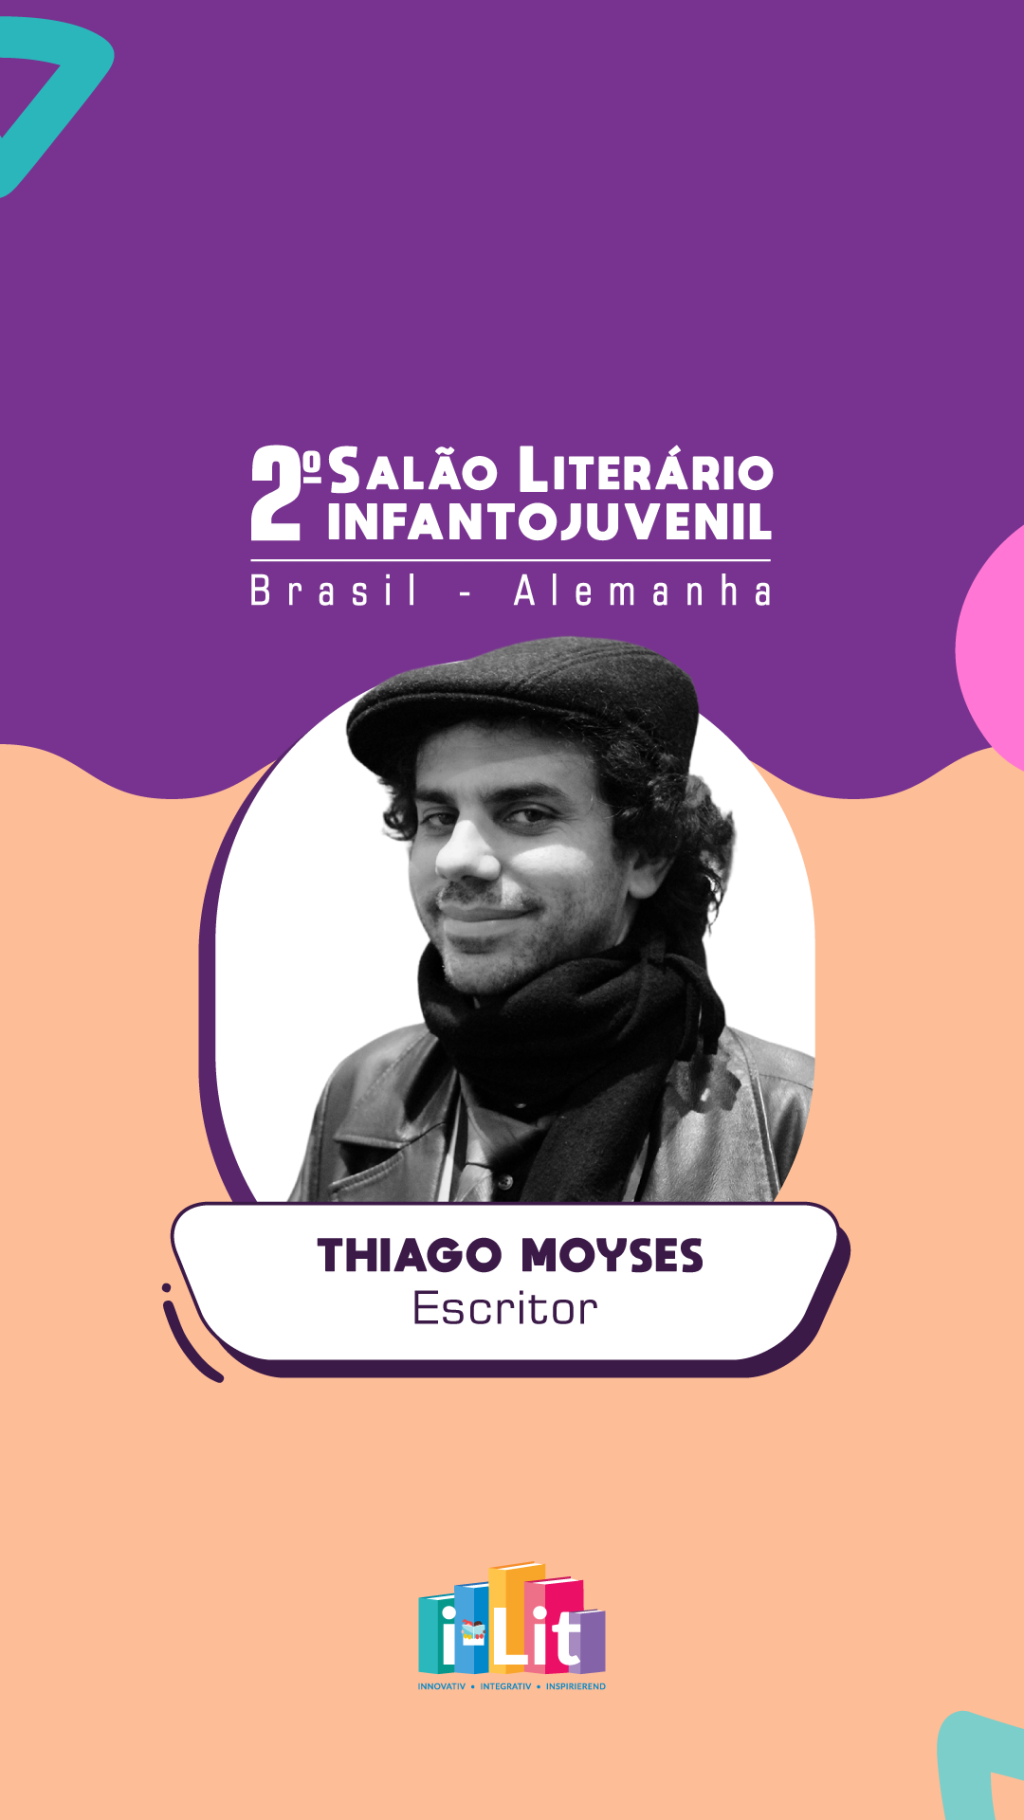 Confira o convite de Thiago Moyses, que estará presente no 2° Salão Literário Infantojuvenil Brasil – Alemanha!